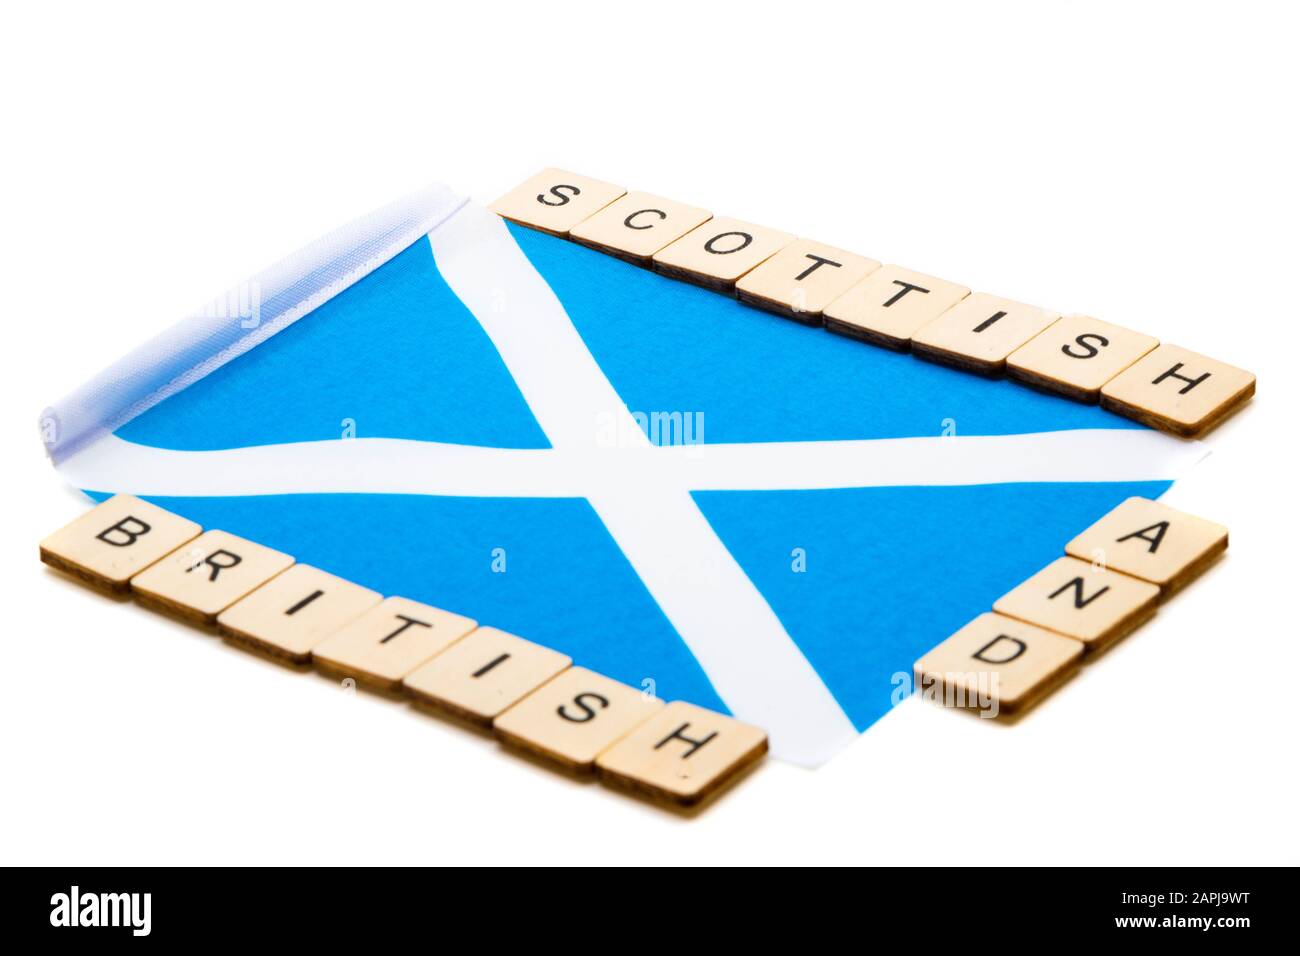 Die Nationalflaggen Schottlands, der Saltaire oder das Kreuz von St Andrews auf weißem Hintergrund mit einem Schild, das schottische Und britische Zeichen liest Stockfoto